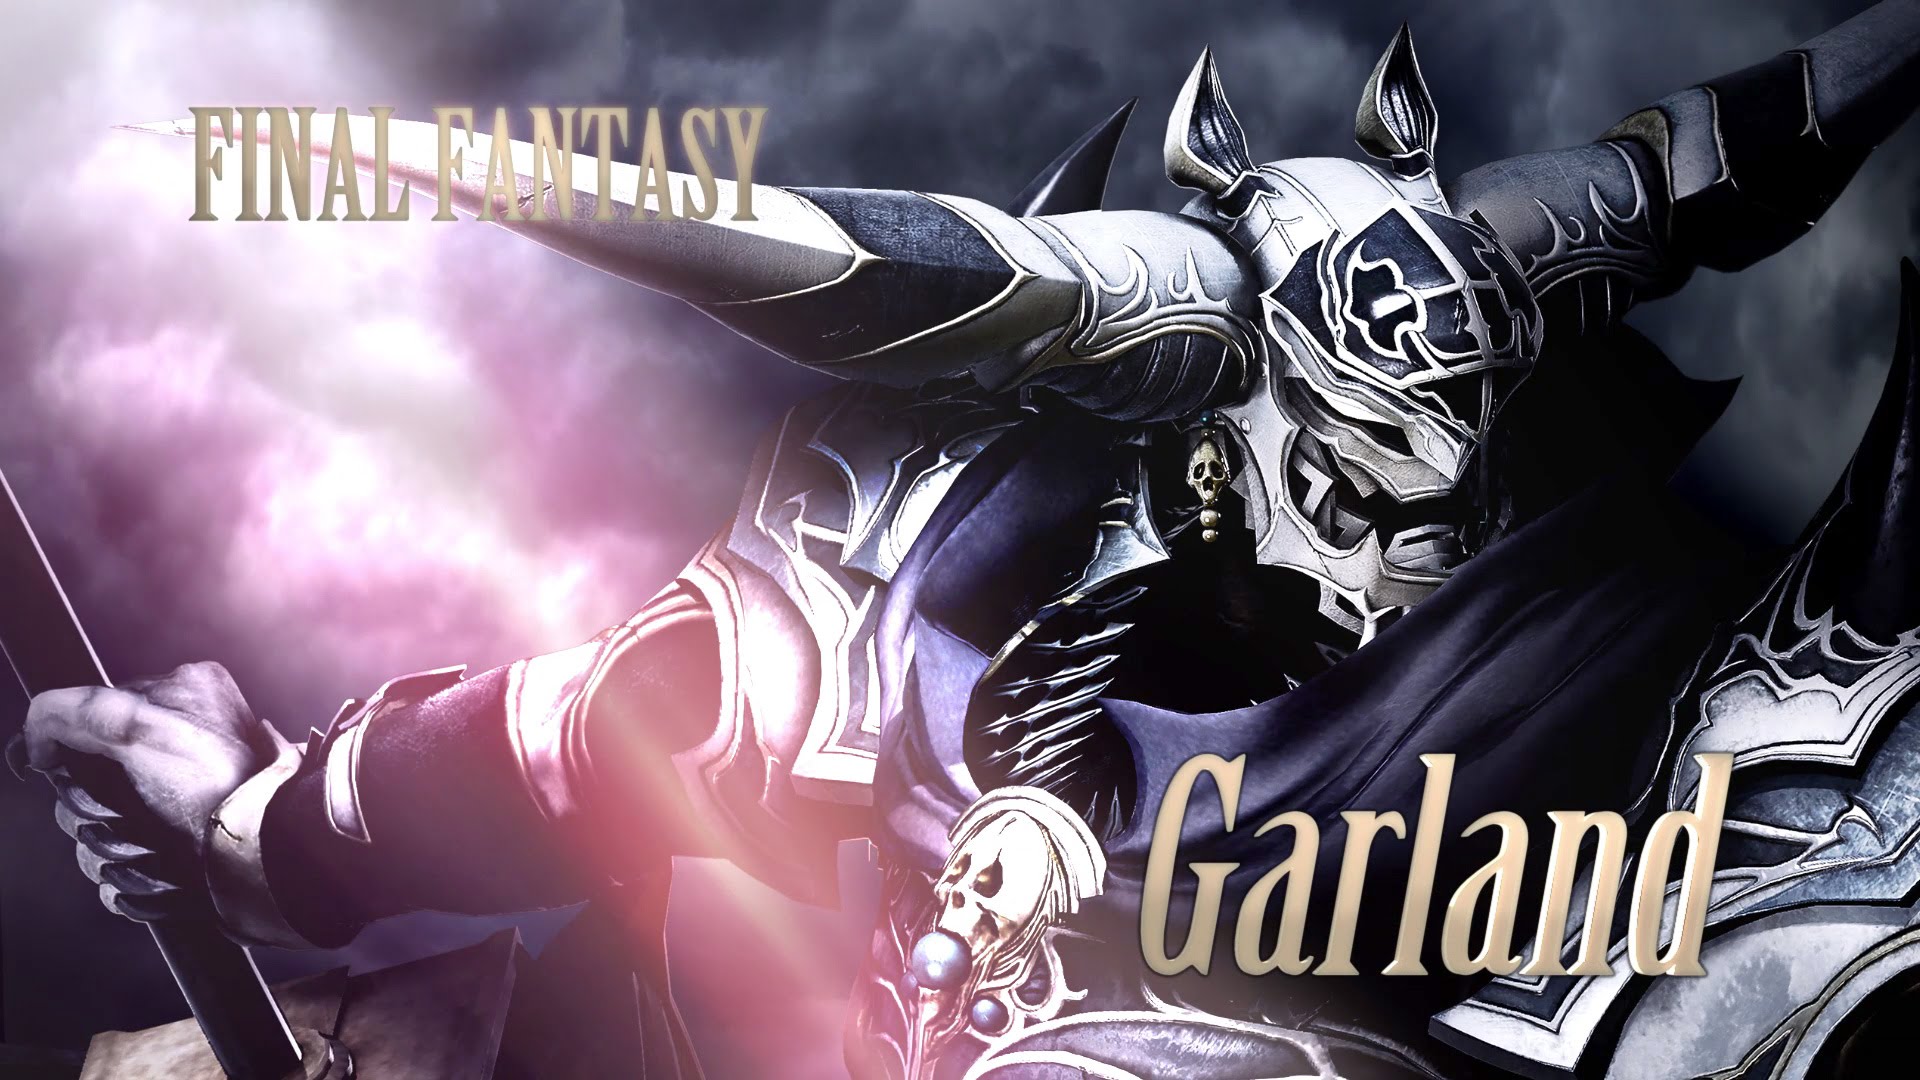 Annunciato Garland in Dissidia Final Fantasy